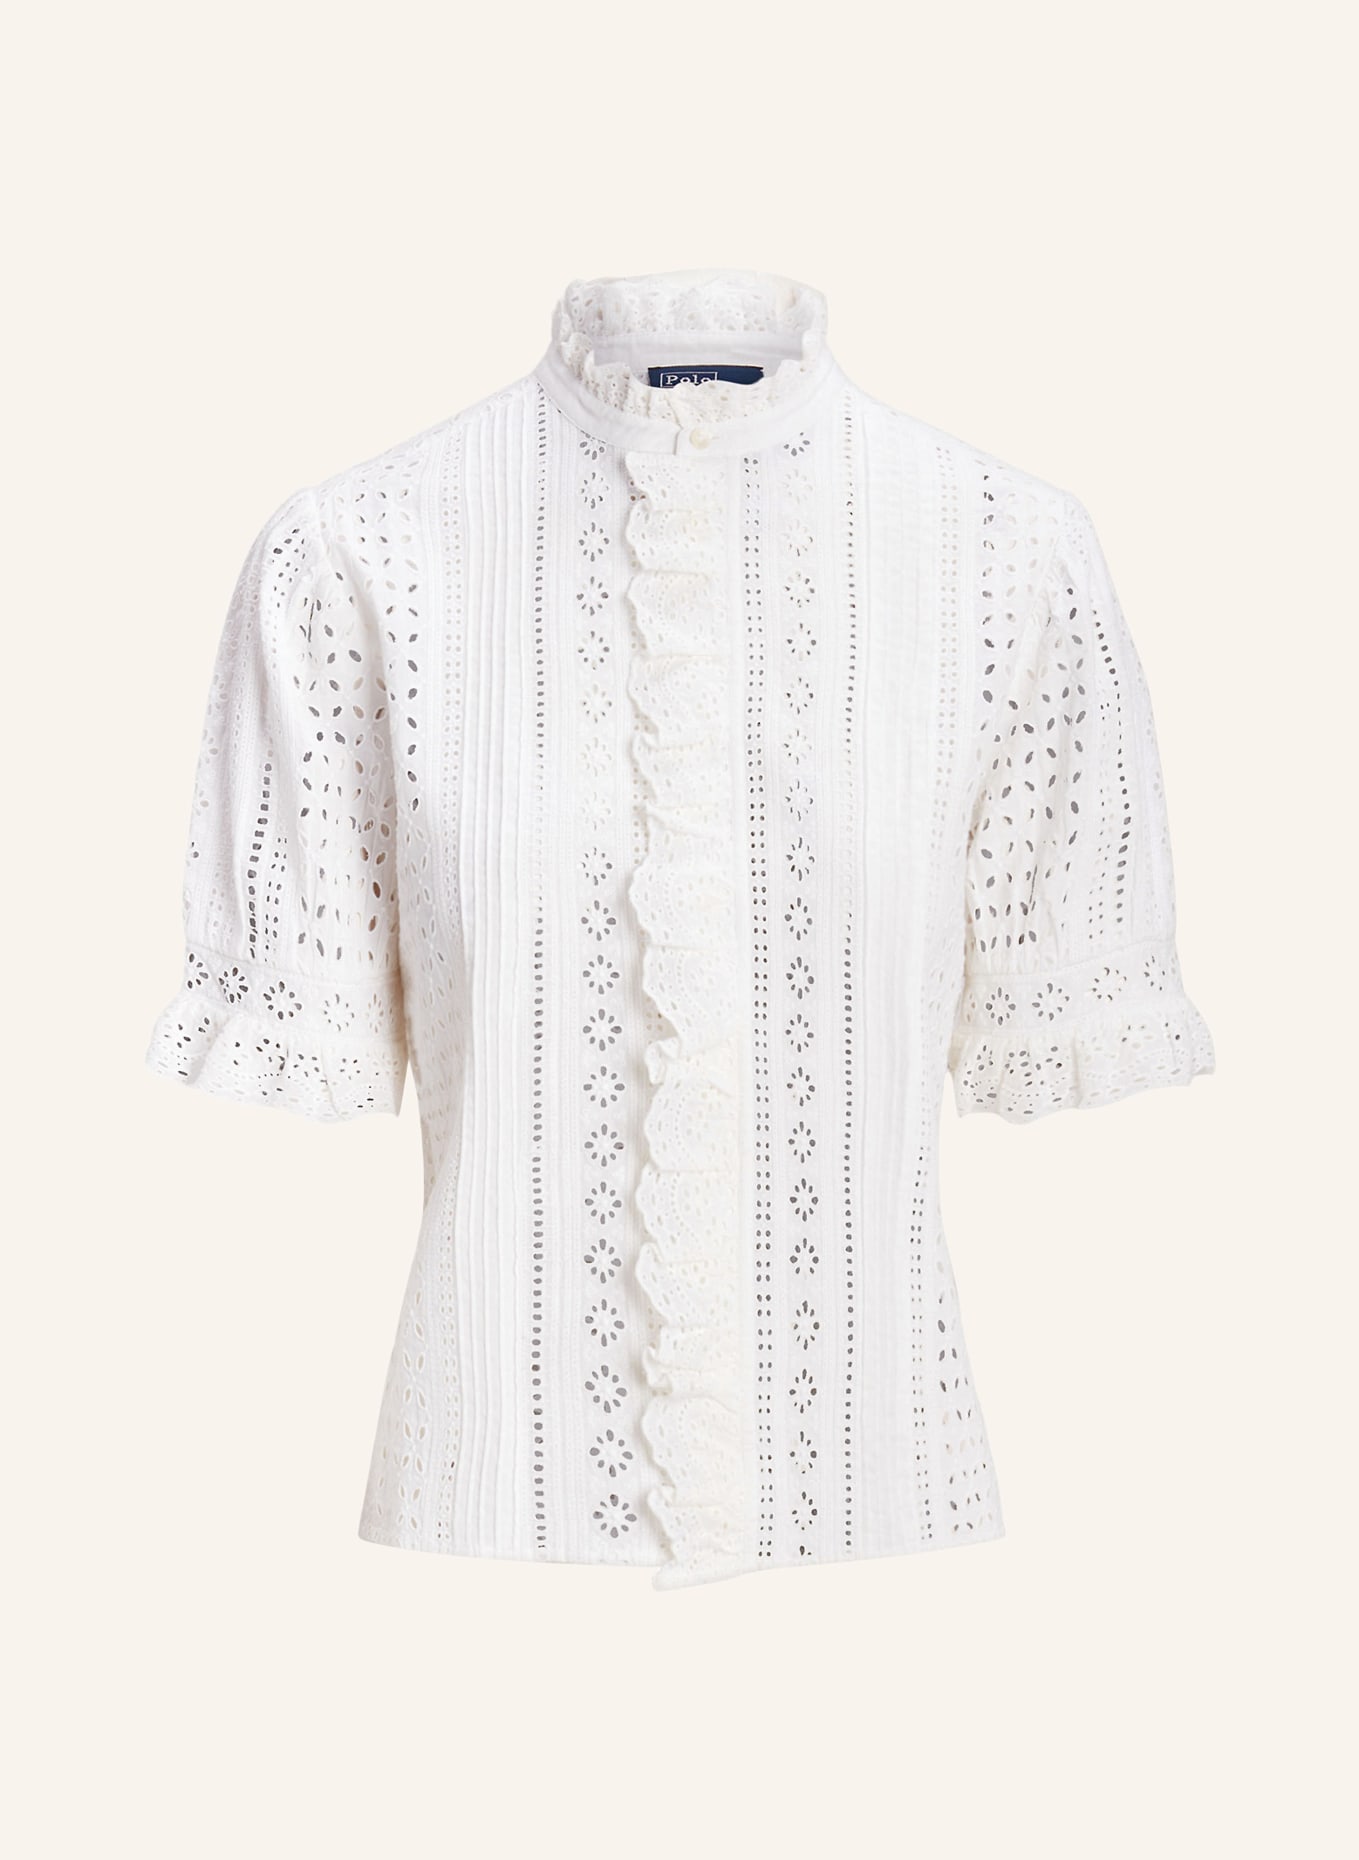 POLO RALPH LAUREN Lace blouse, Color: WHITE (Image 1)